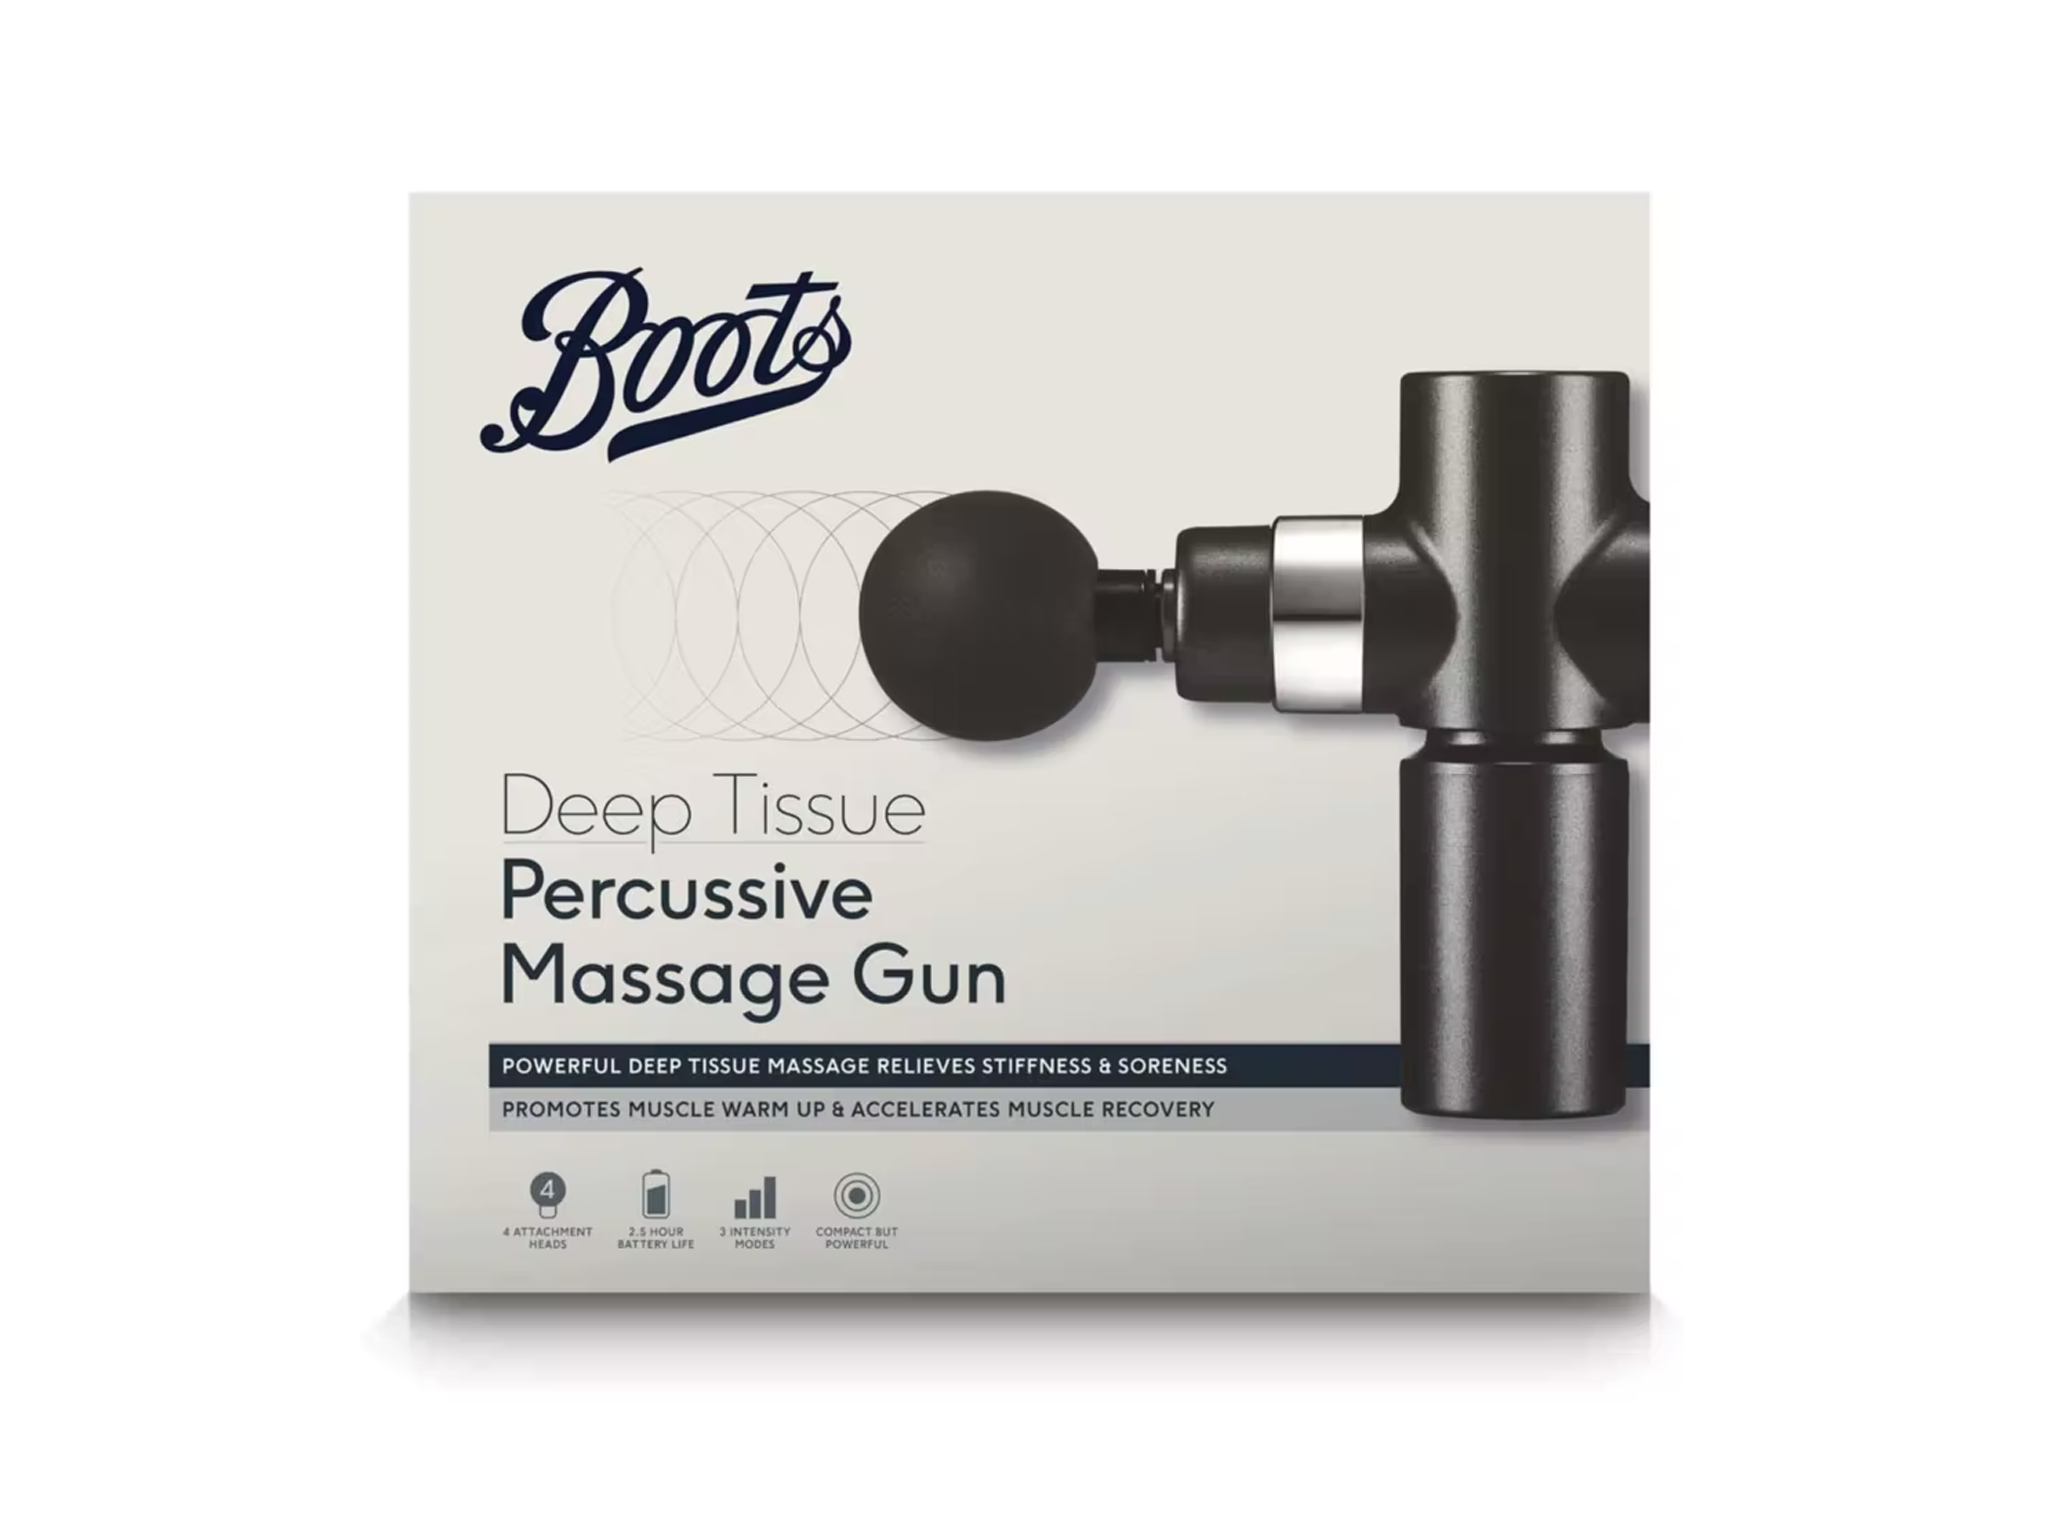 Boots deep tissue percussive massage gun